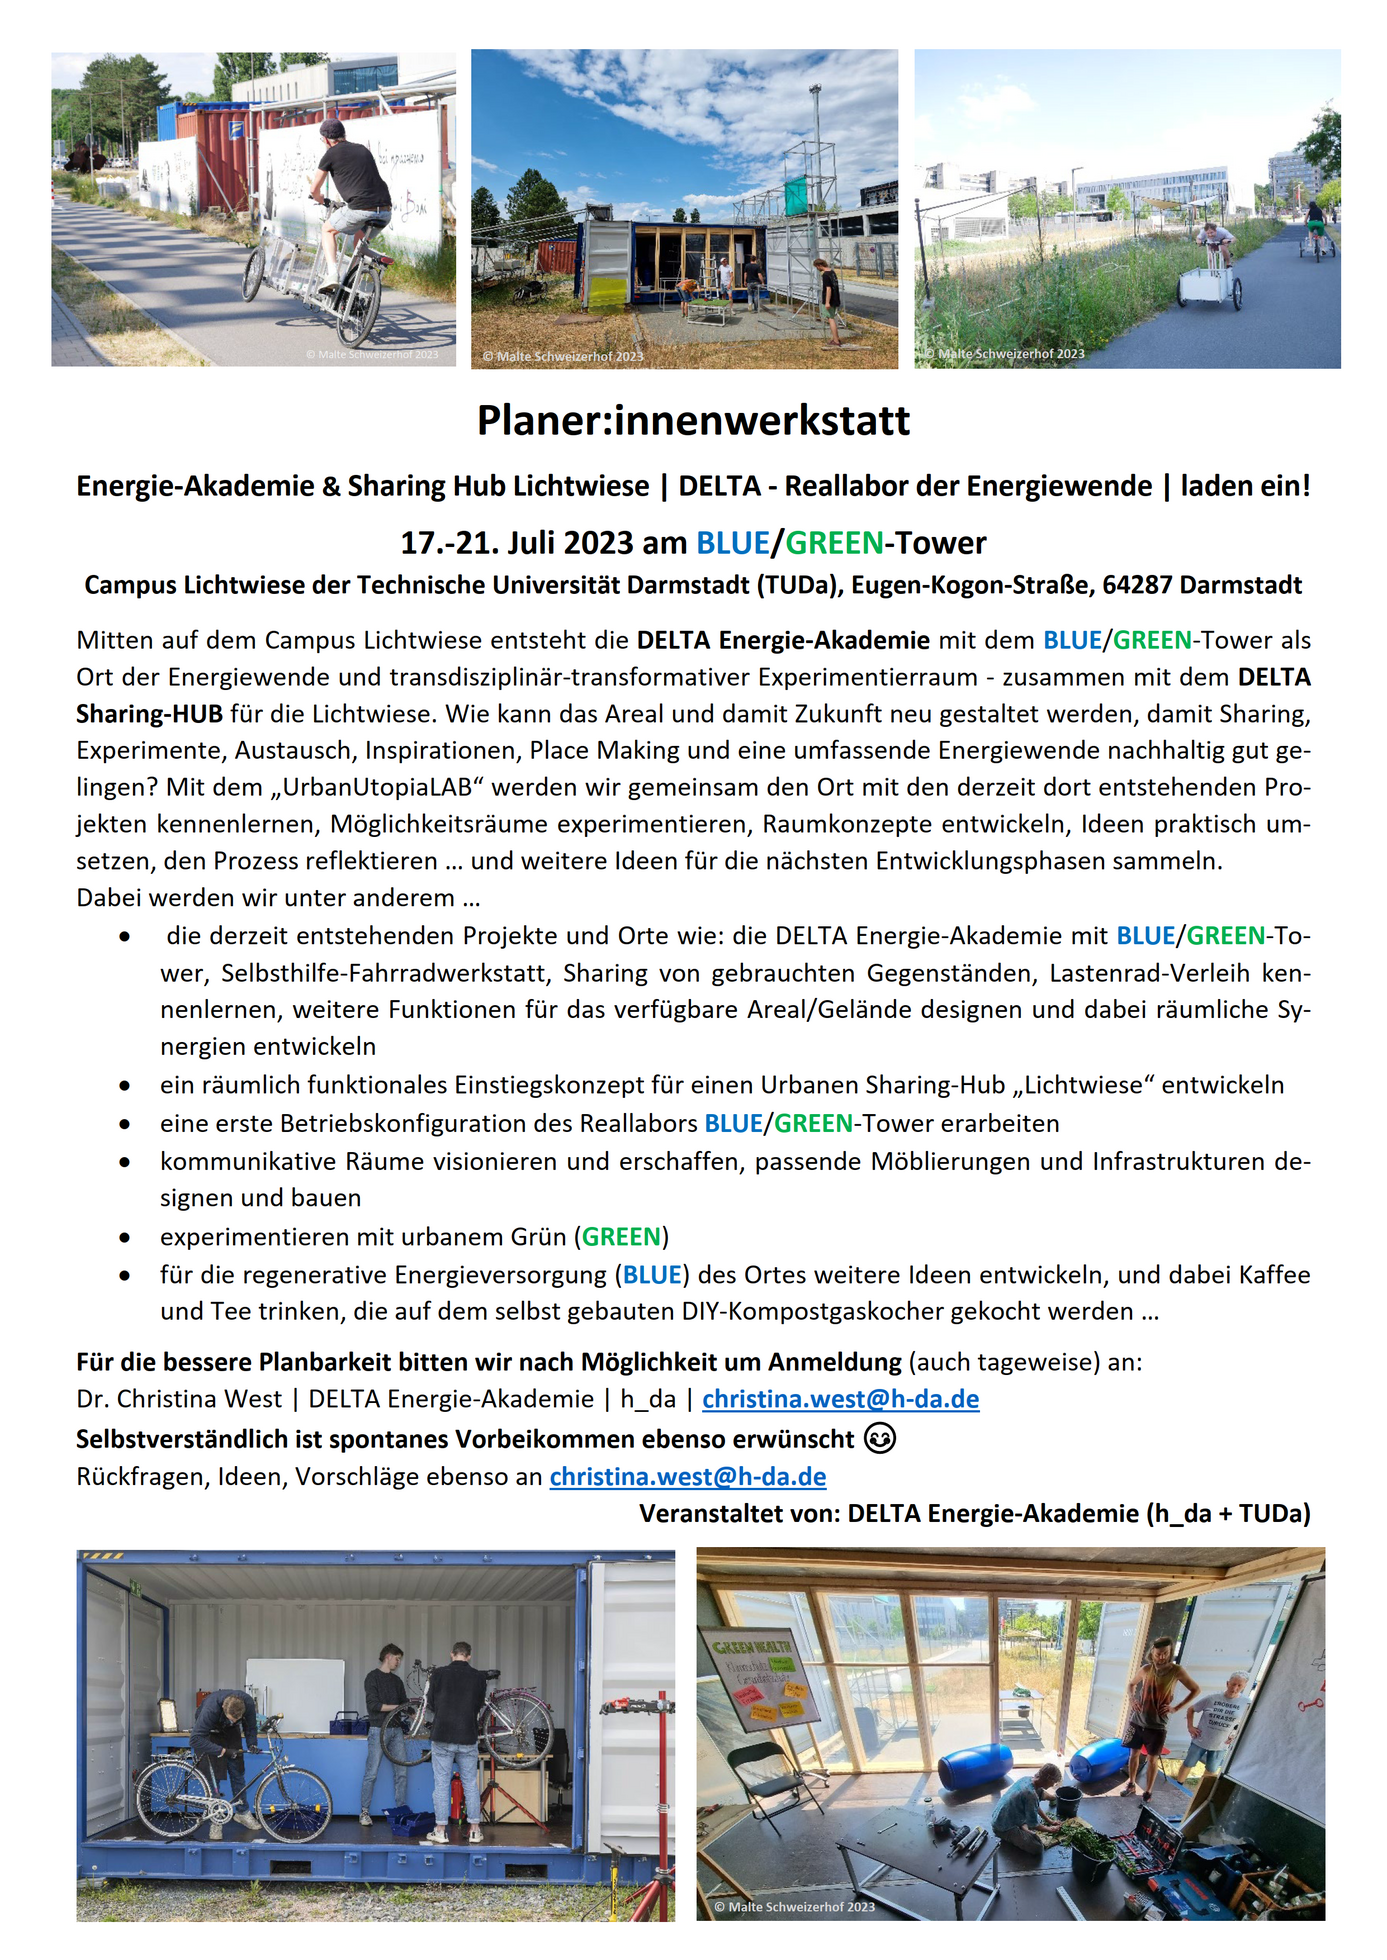 Herzliche Einladung zur Planer:innenwerkstatt vom 17.-21. Juli 2023 am BLUE/GREEN-Tower (Seite 1)